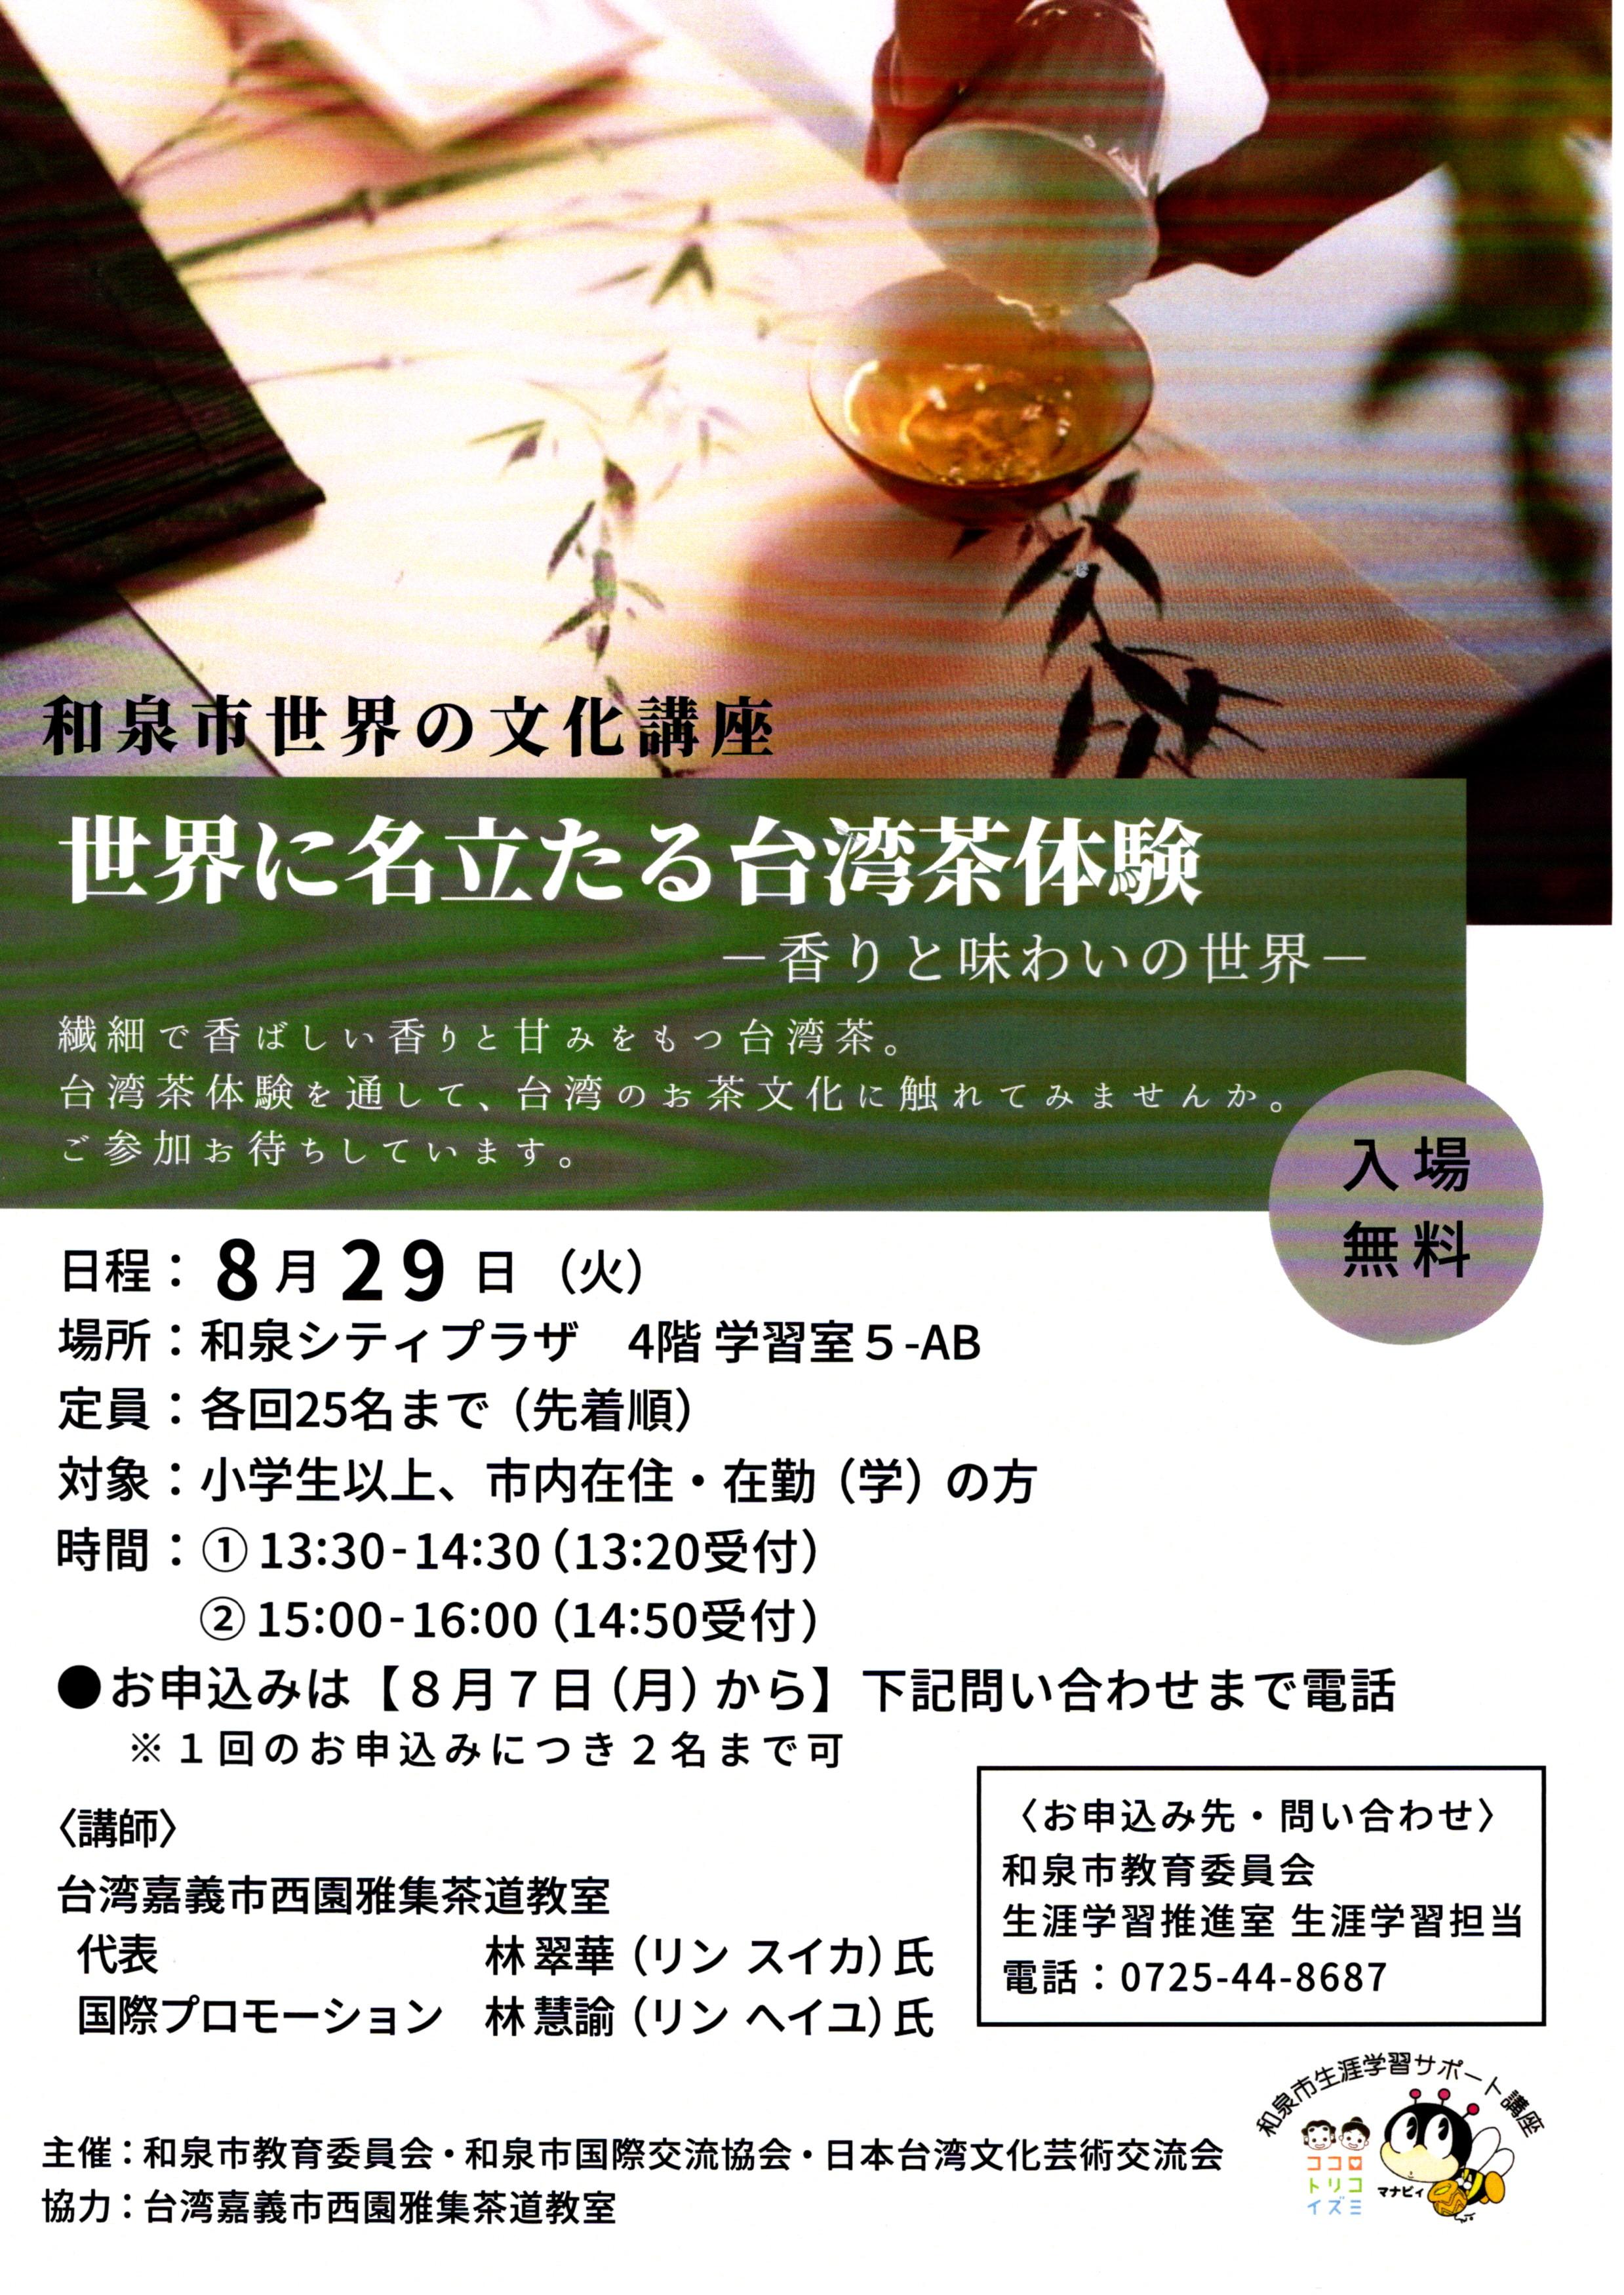 【終了】和泉市世界の文化講座「世界に名立たる台湾茶体験–香りと味わいの世界–」